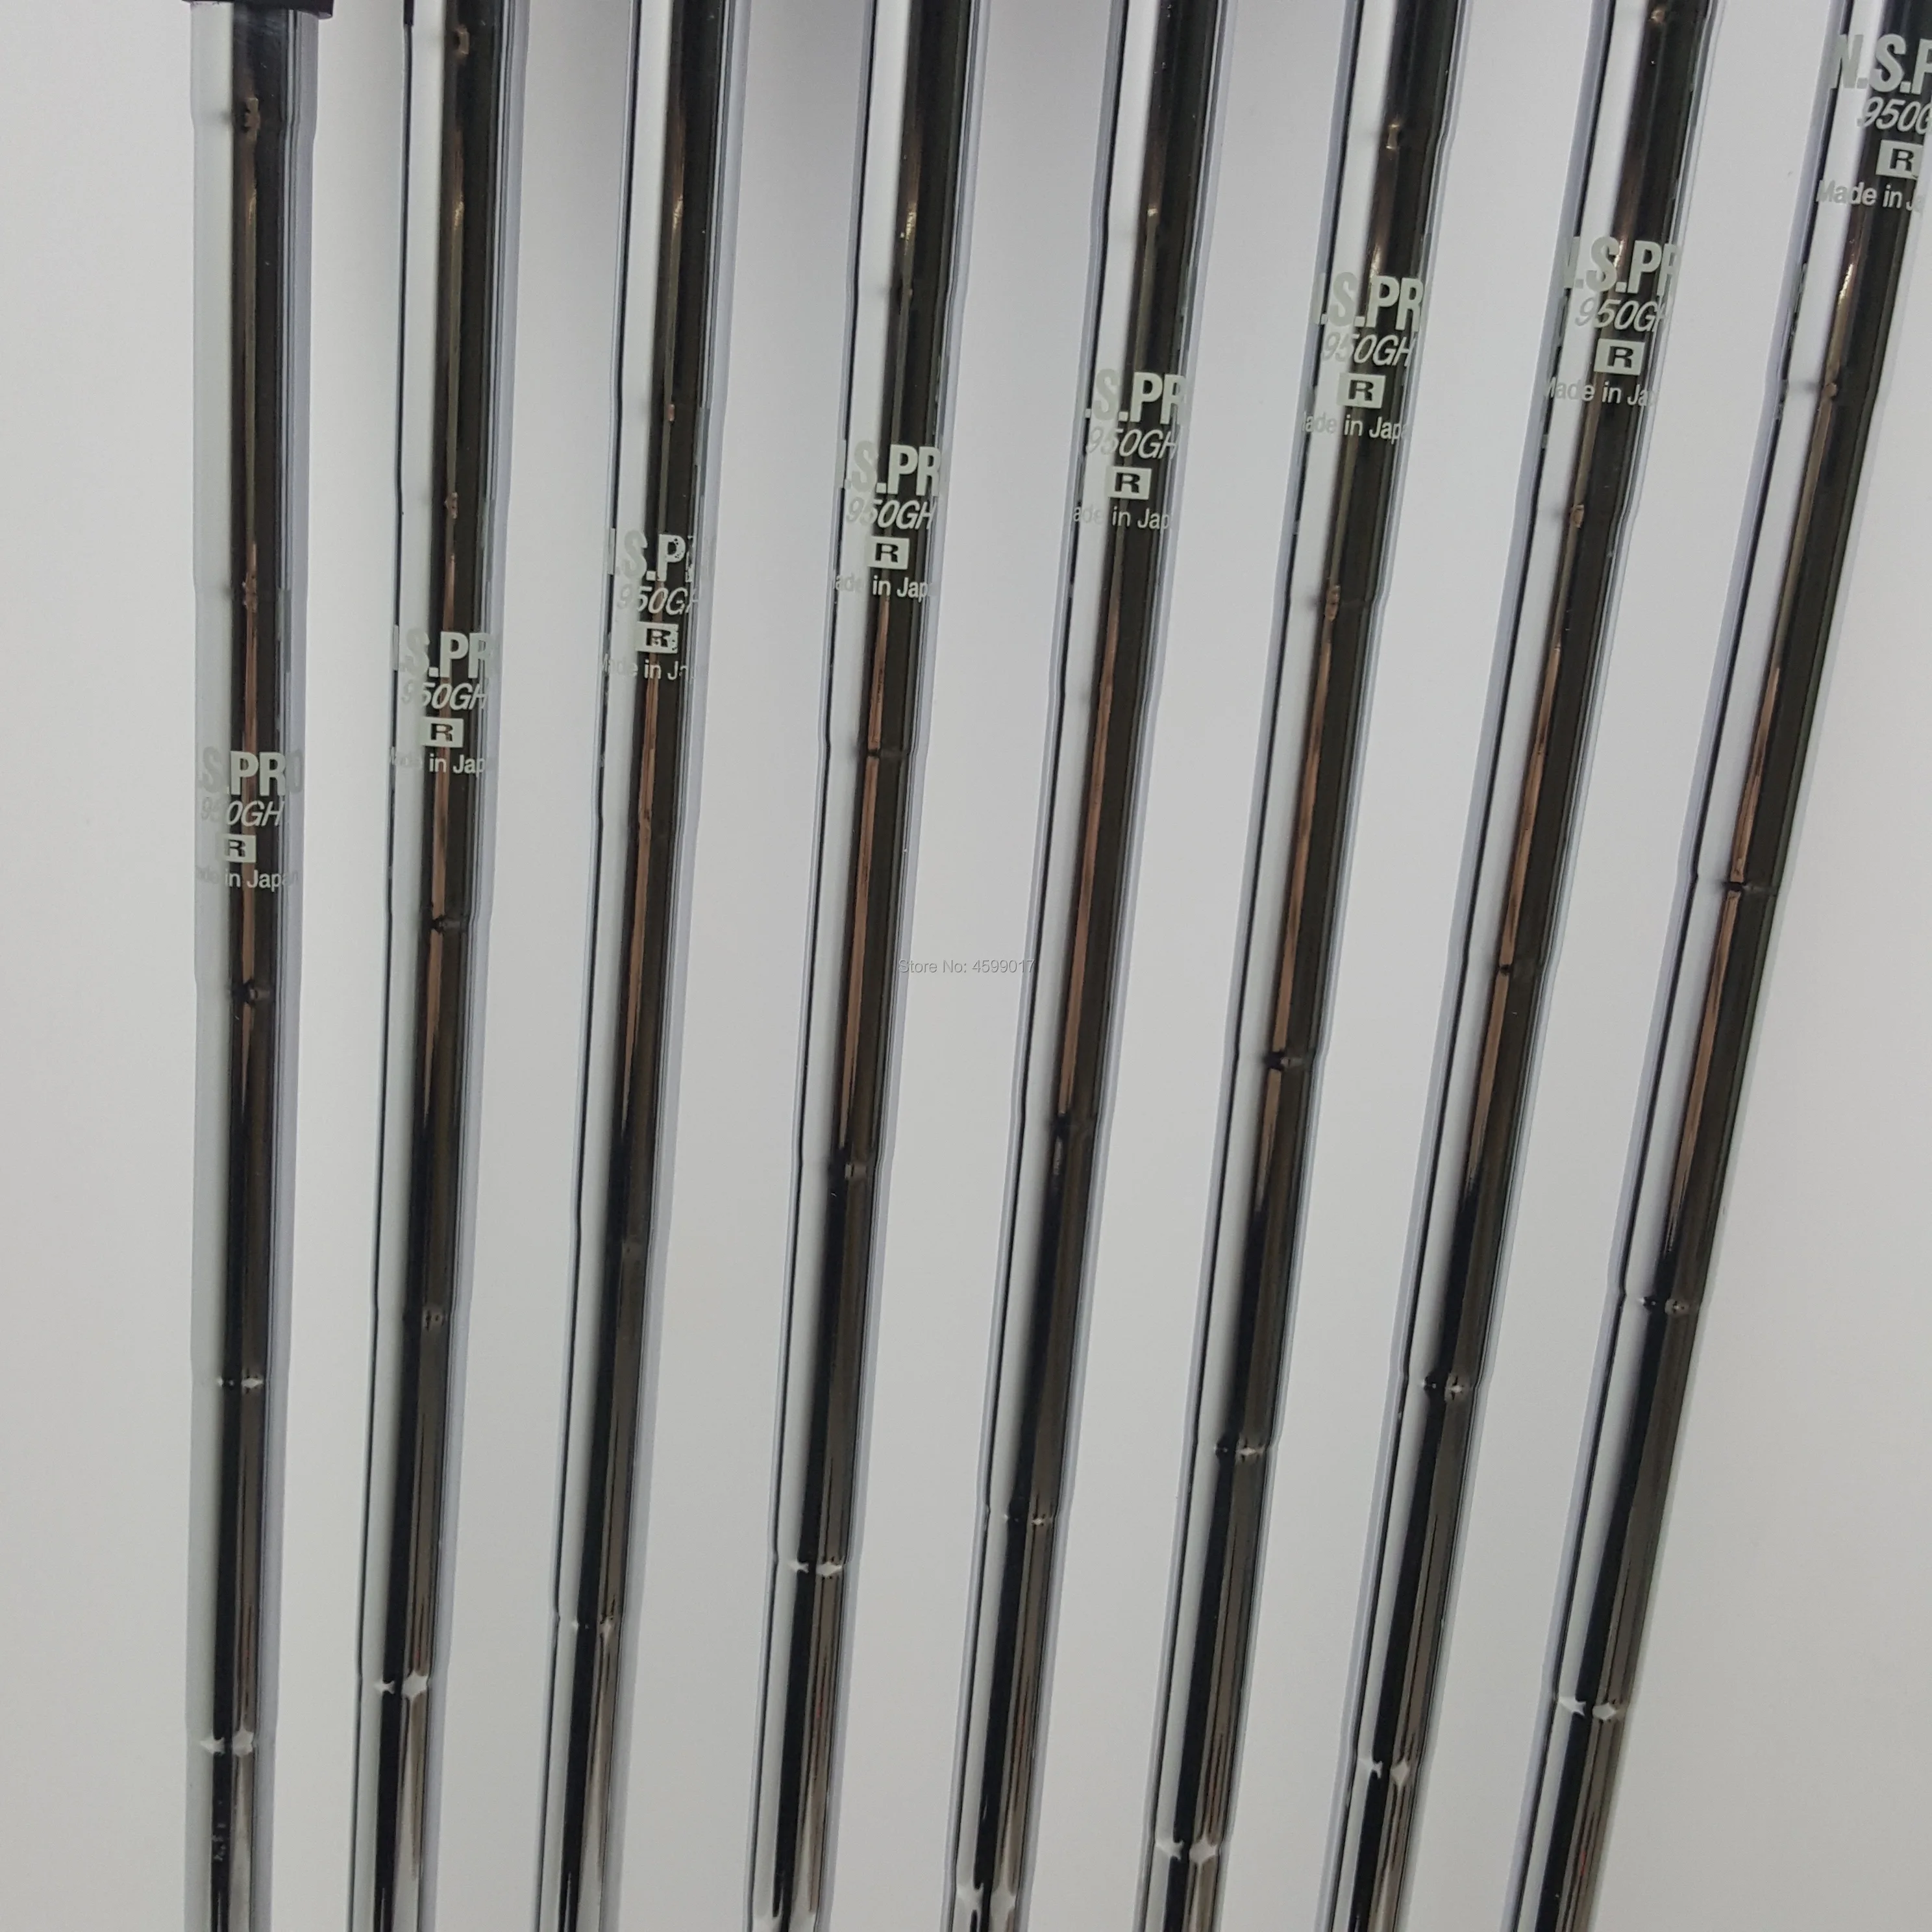 Клюшки для гольфа набор утюгов HONMA TW737V набор для гольфа 4-9 10 клубов NS. PRO стальной графитовая клюшка для гольфа R/S Flex